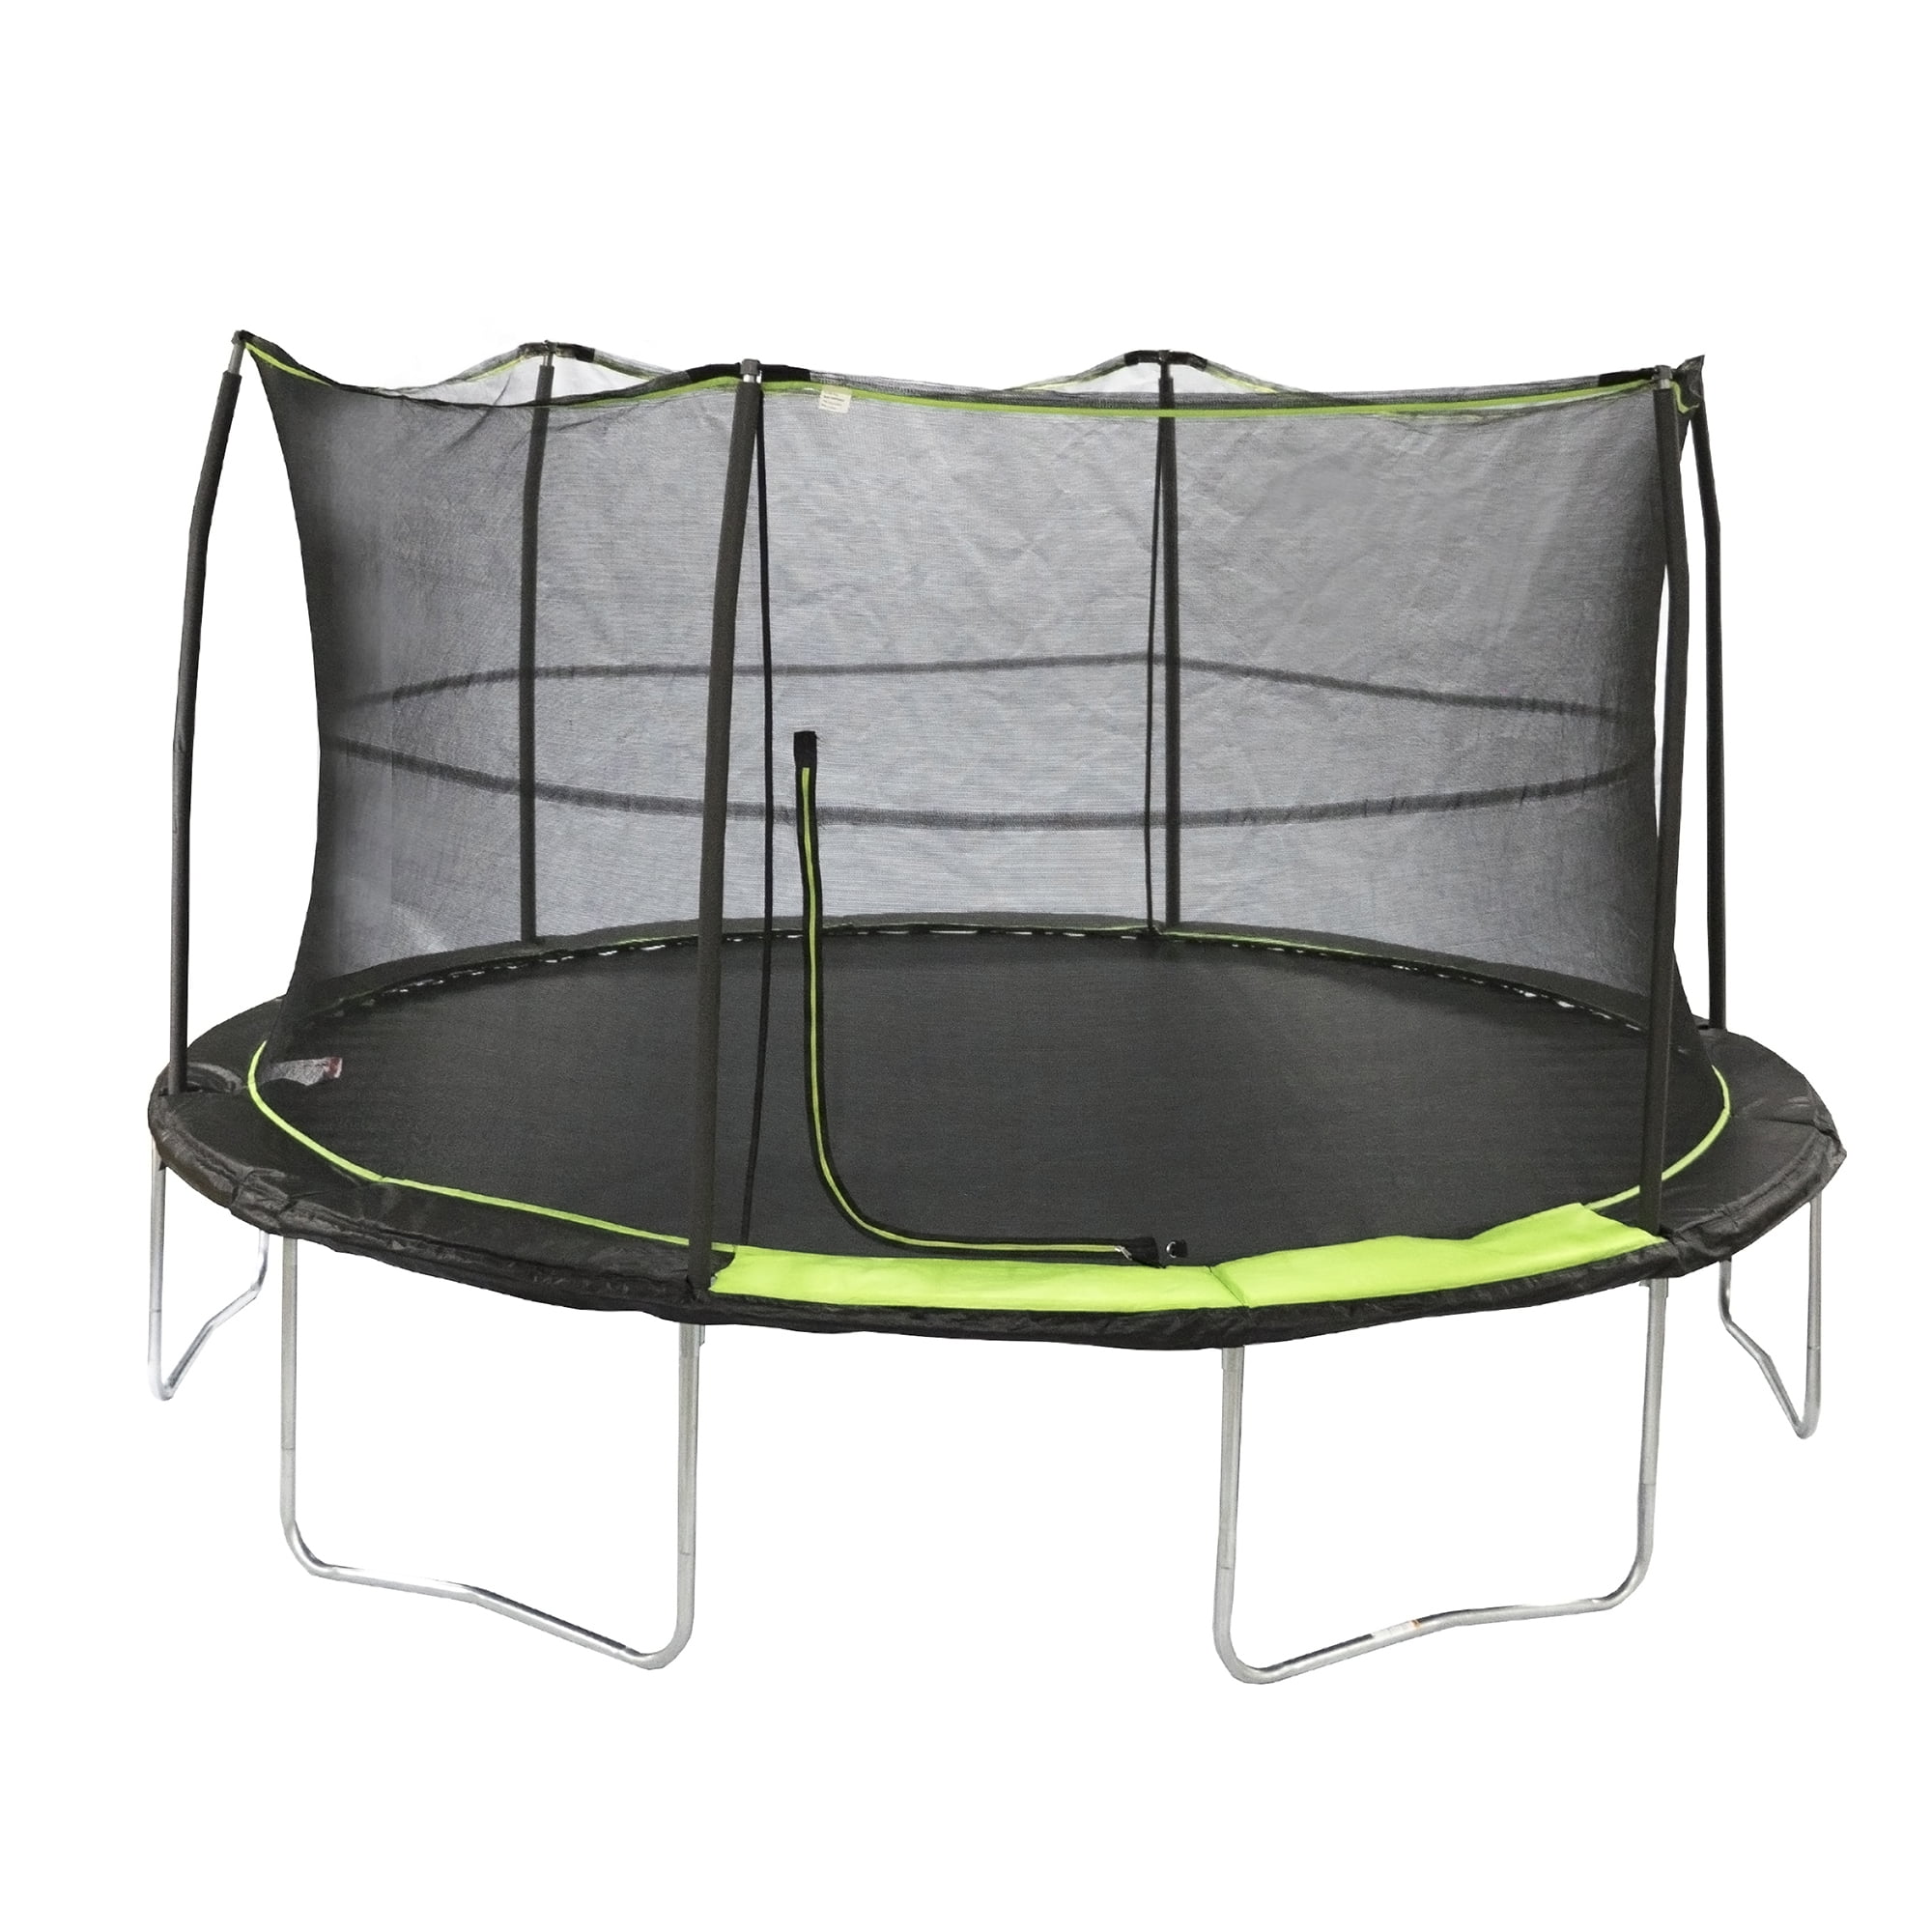 med sig Slime Afhængig JumpKing 14ft Trampoline with Safety Enclosure, 200lb Weight Limit Black  Lime Green - Walmart.com